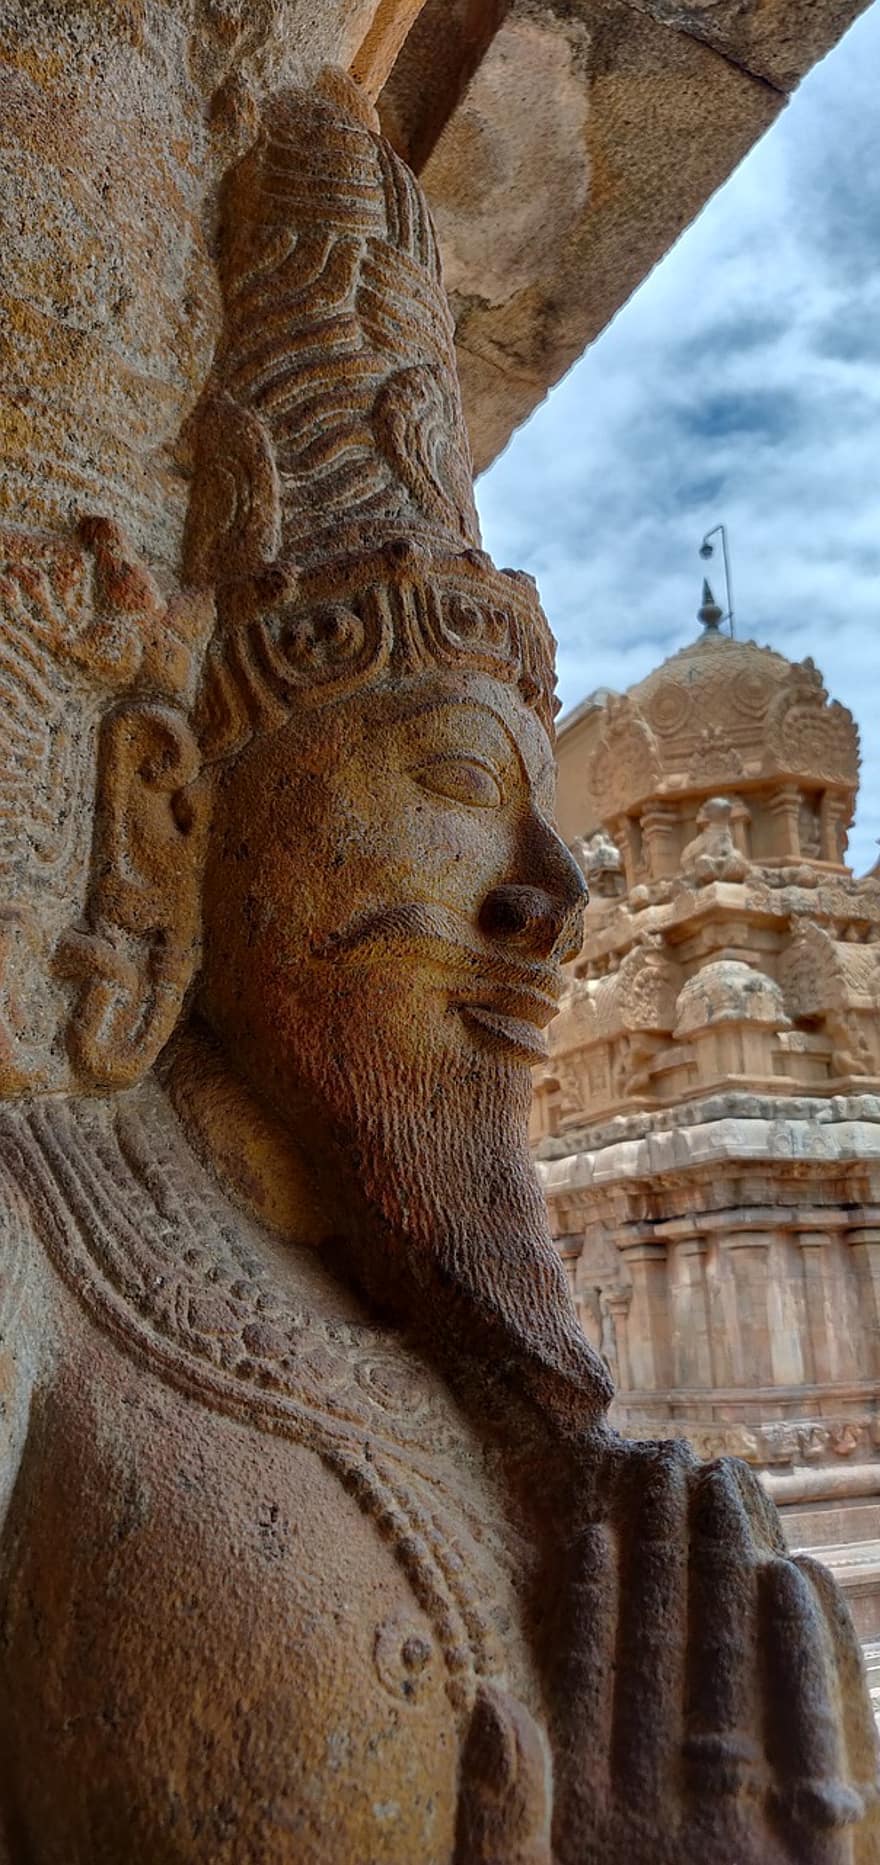 arkkitehtuuri, veistos, patsas, Intia, tamilnadu, historiallinen, temppeli, shiva, iso temppeli, Thanjavur, viljelmät